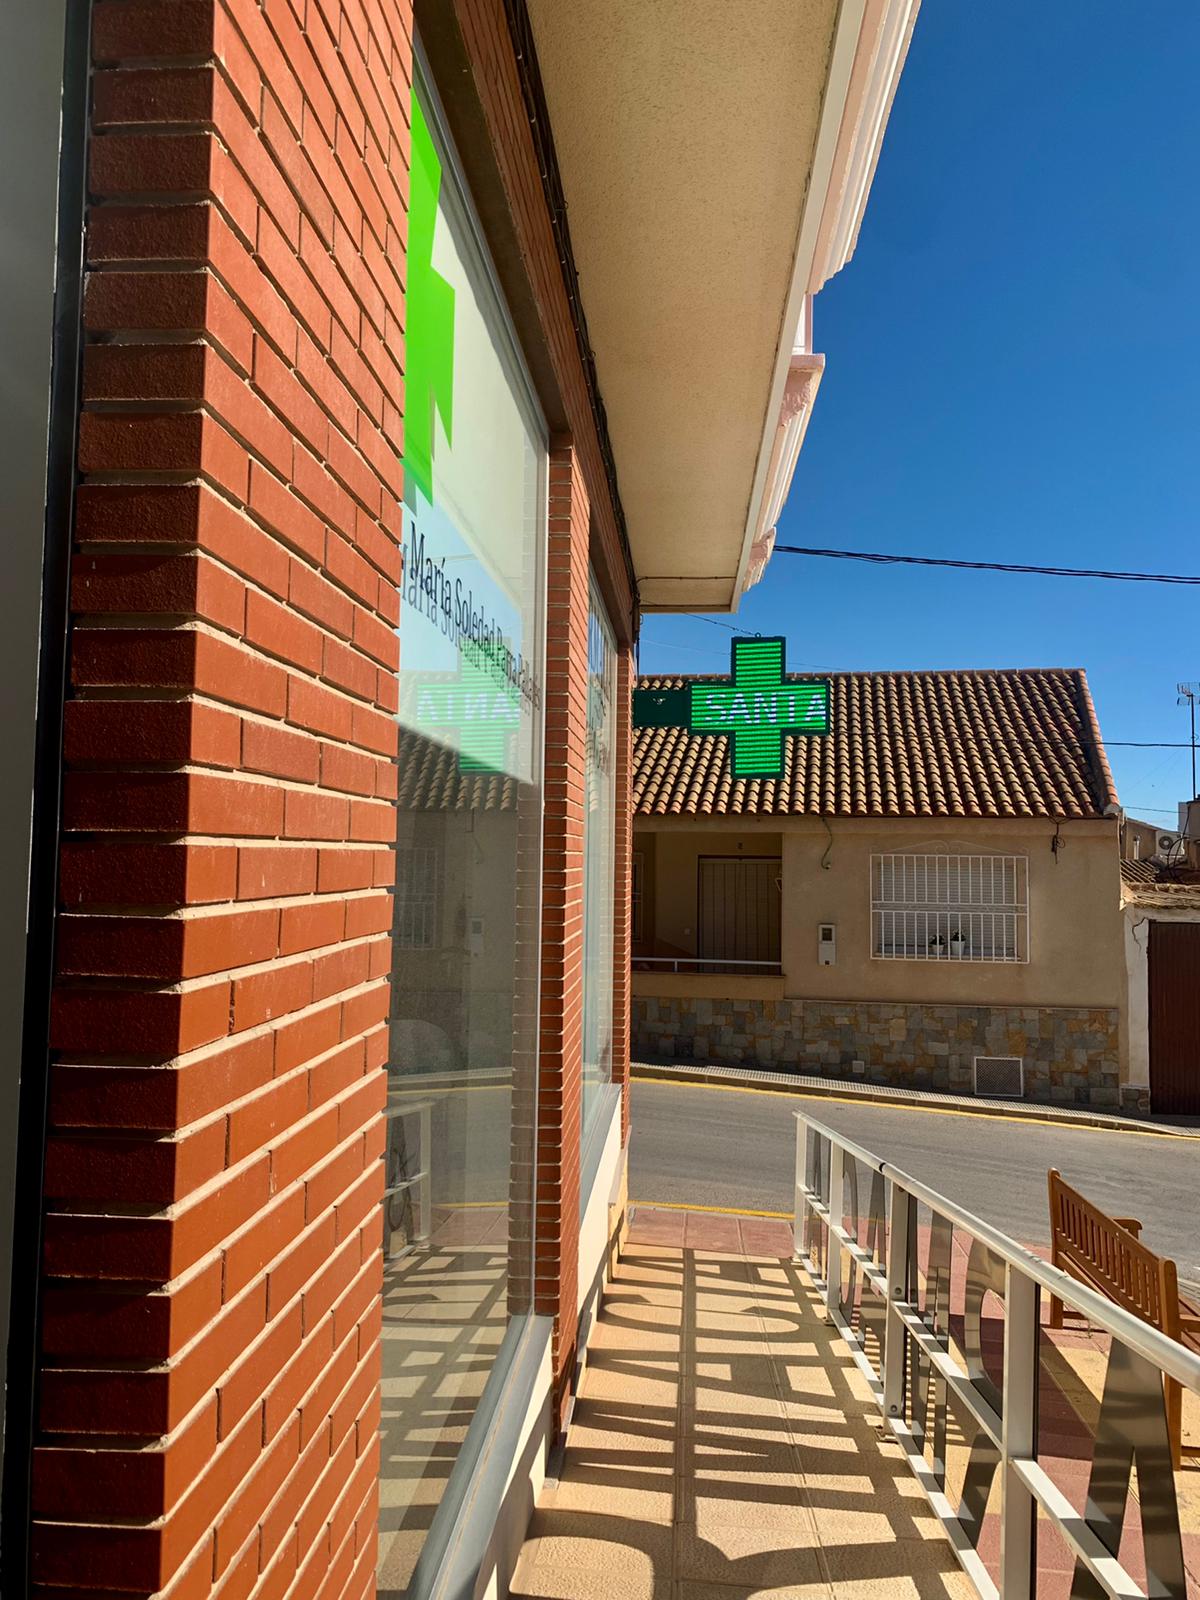 Farmacia Santa Teresa (Los Martínez del Puerto)